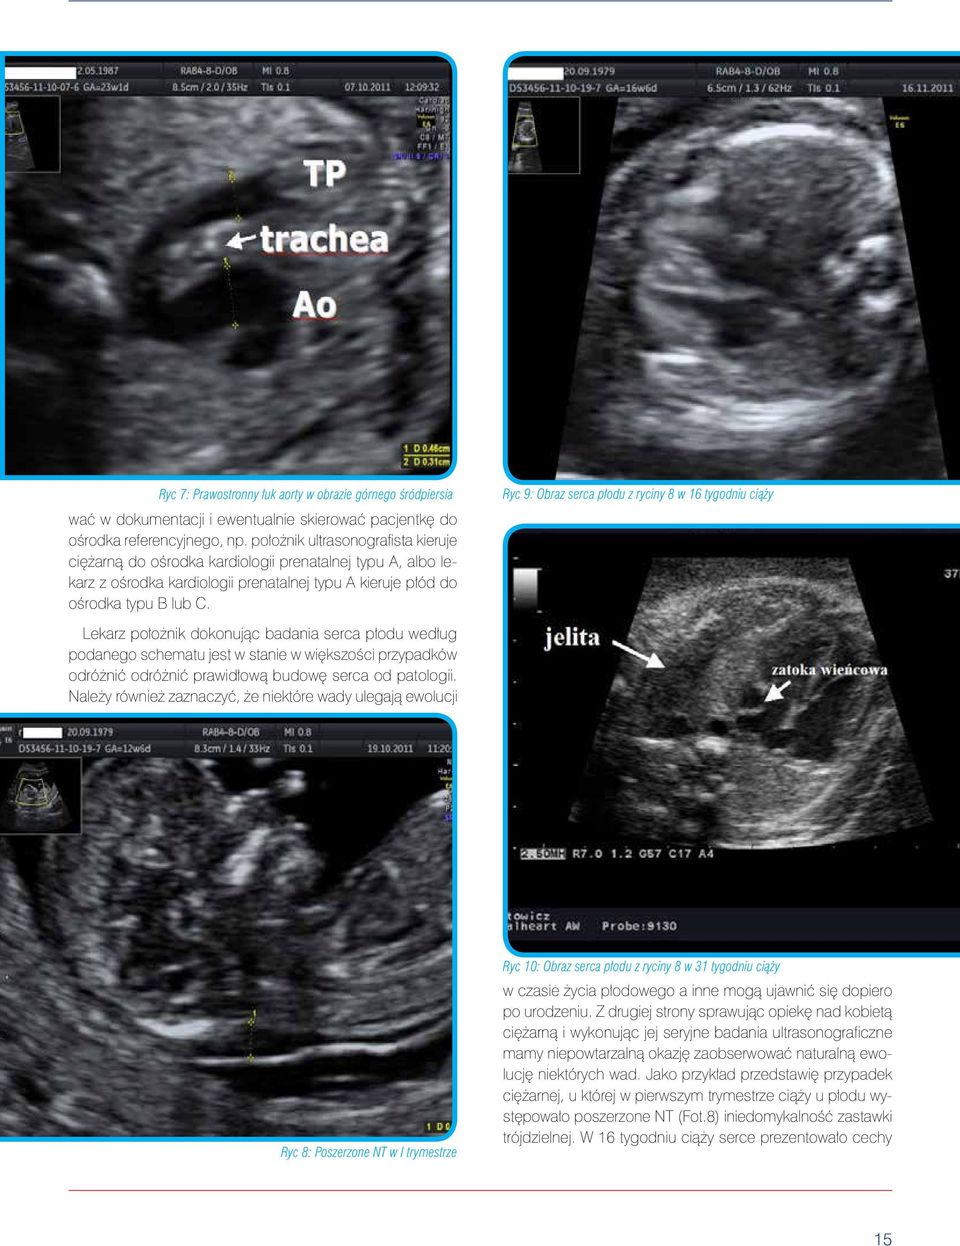 Ryc 9: Obraz serca płodu z ryciny 8 w 16 tygodniu ciąży Lekarz położnik dokonując badania serca płodu według podanego schematu jest w stanie w większości przypadków odróżnić odróżnić prawidłową